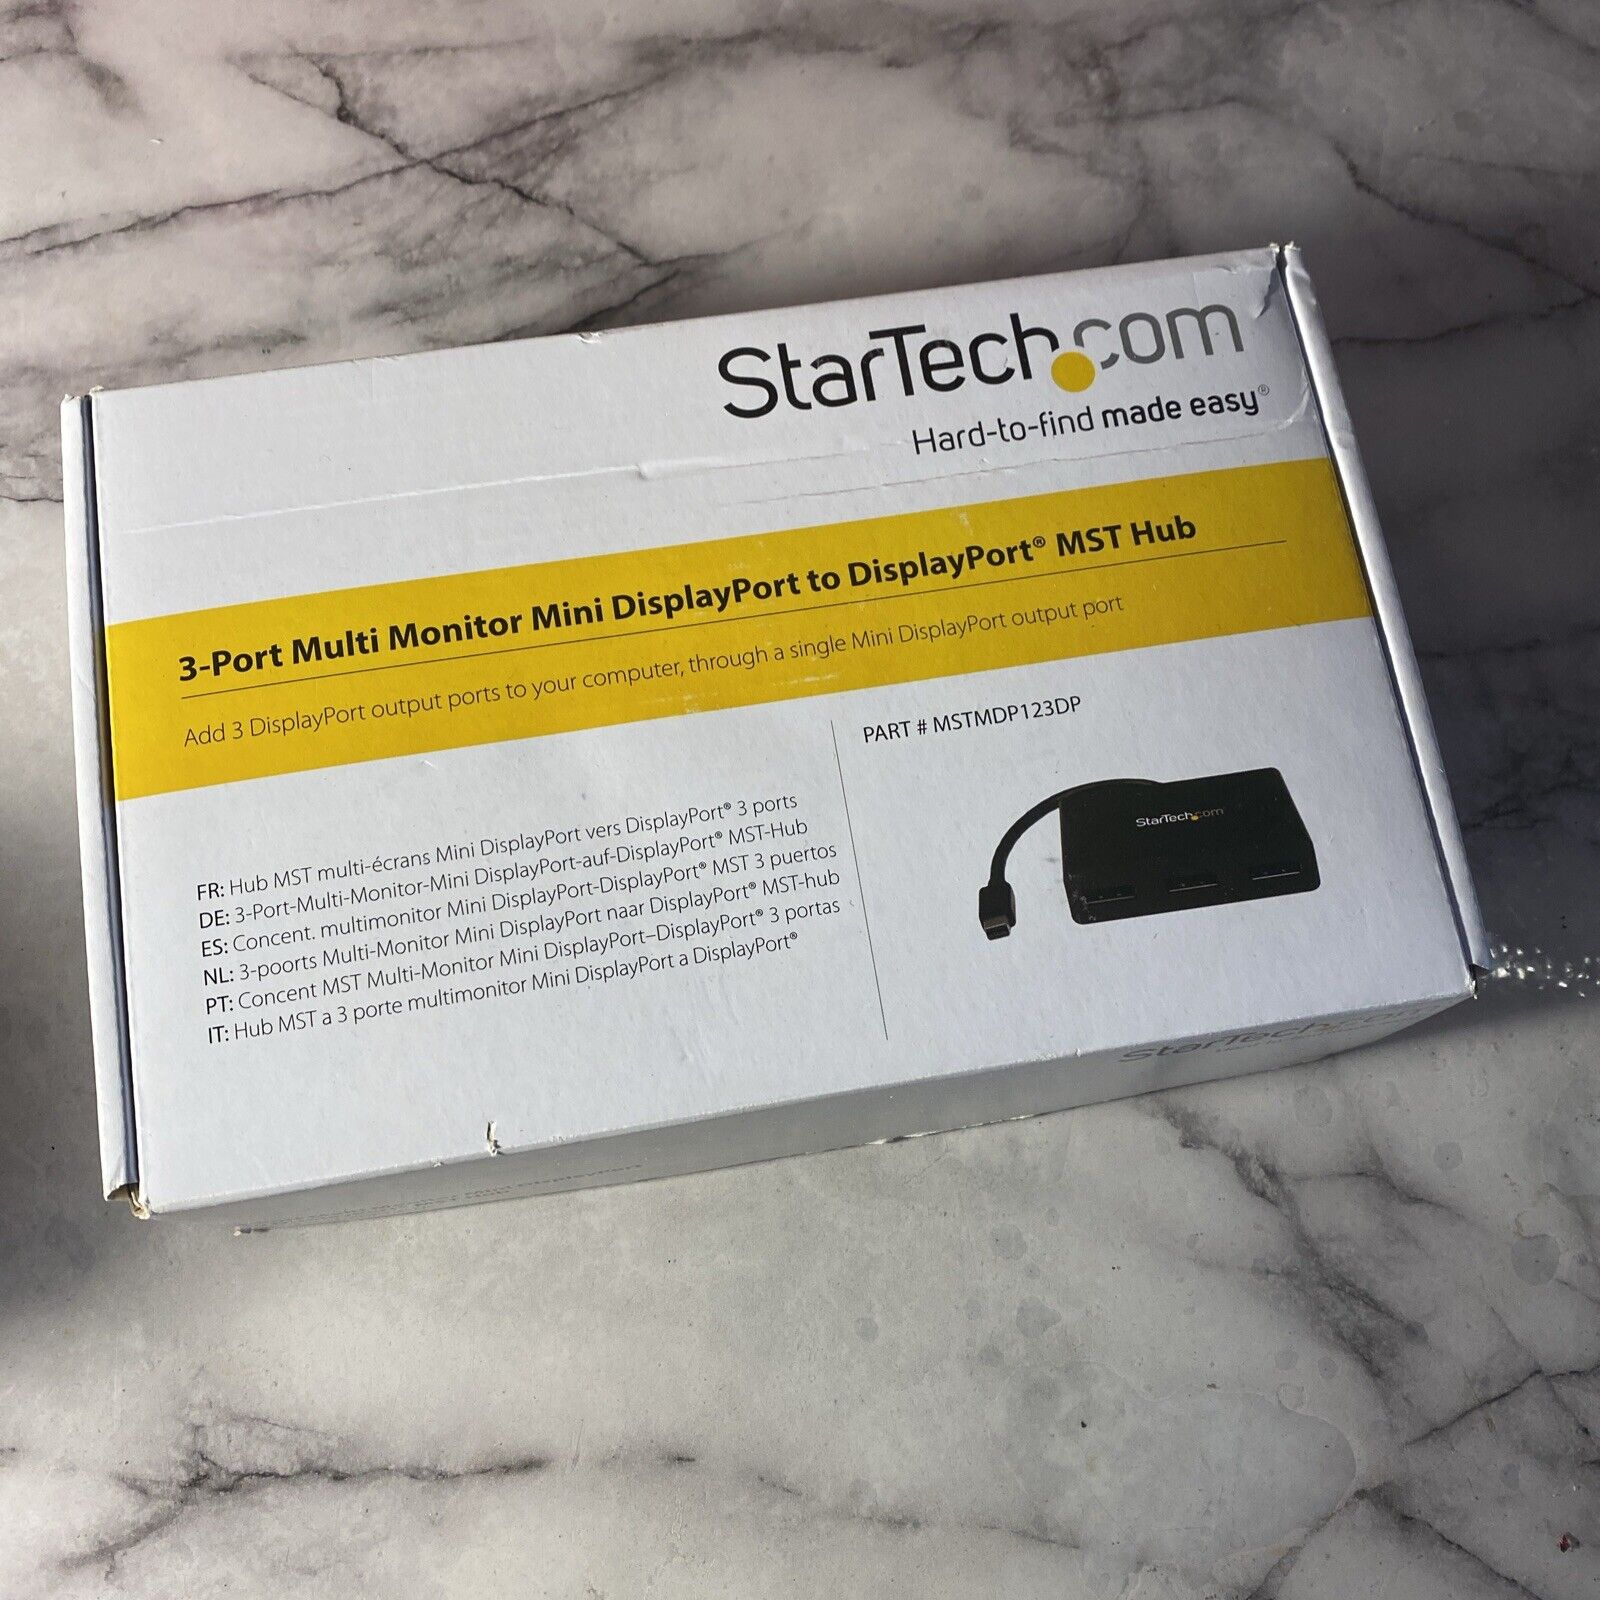 StarTech.com 3-Port Multi Monitor Mini DisplayPort to DisplayPort MST Hub